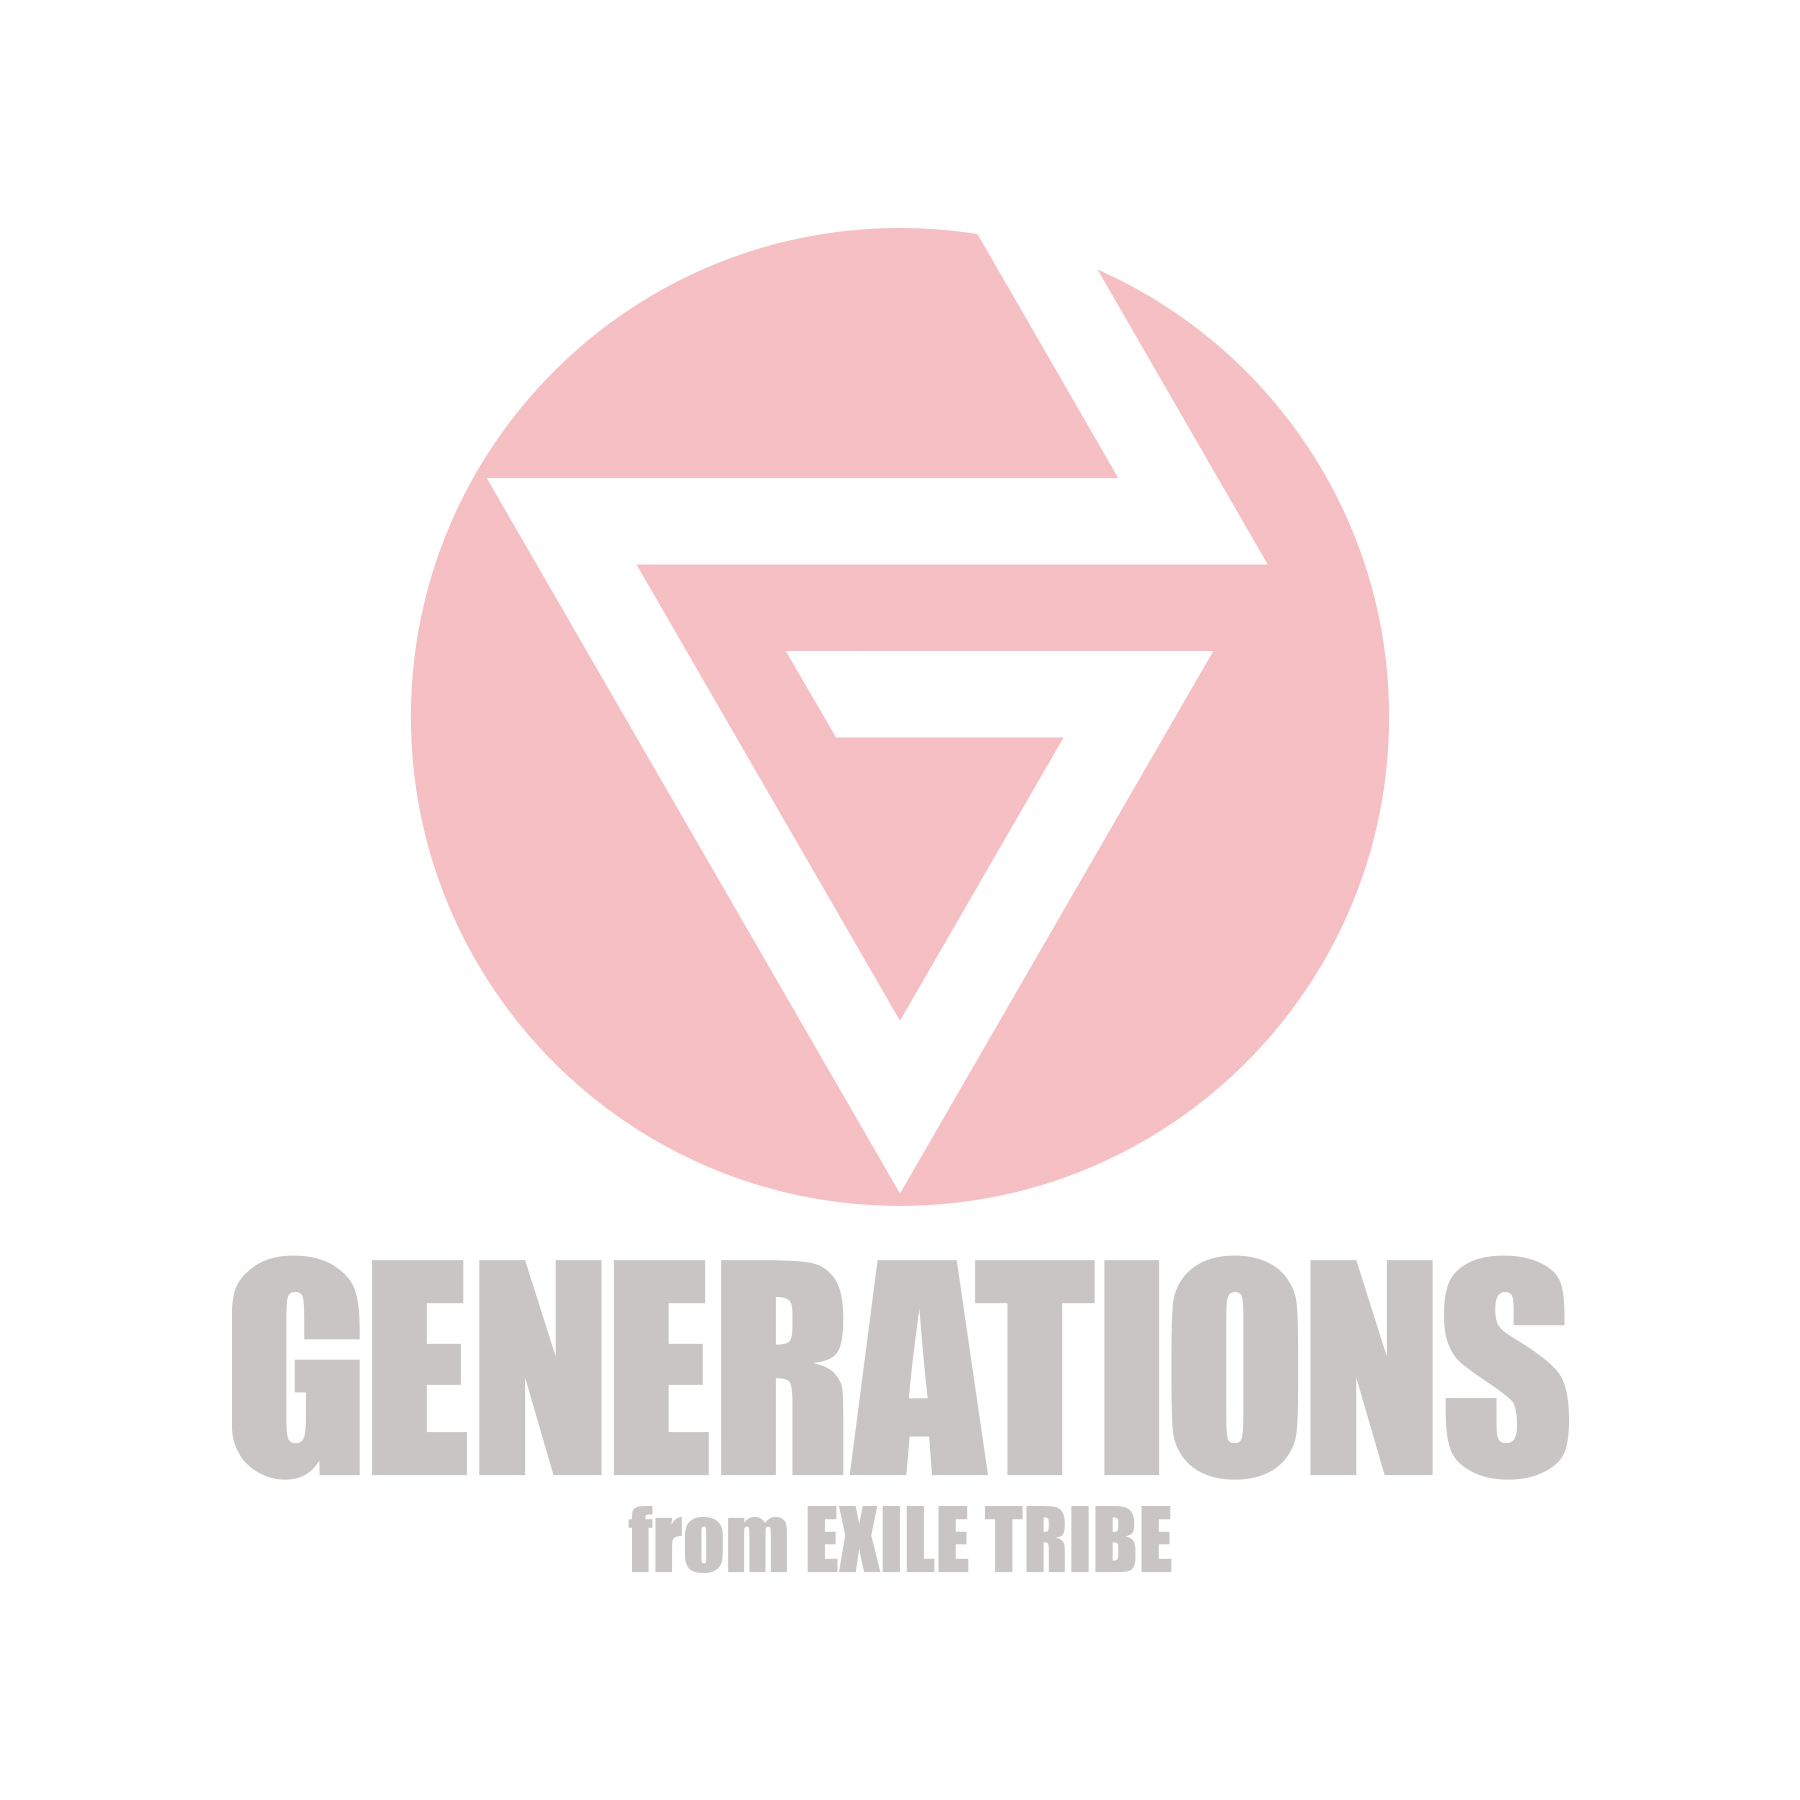 新しい Generations ロゴ 高画質 カランシン